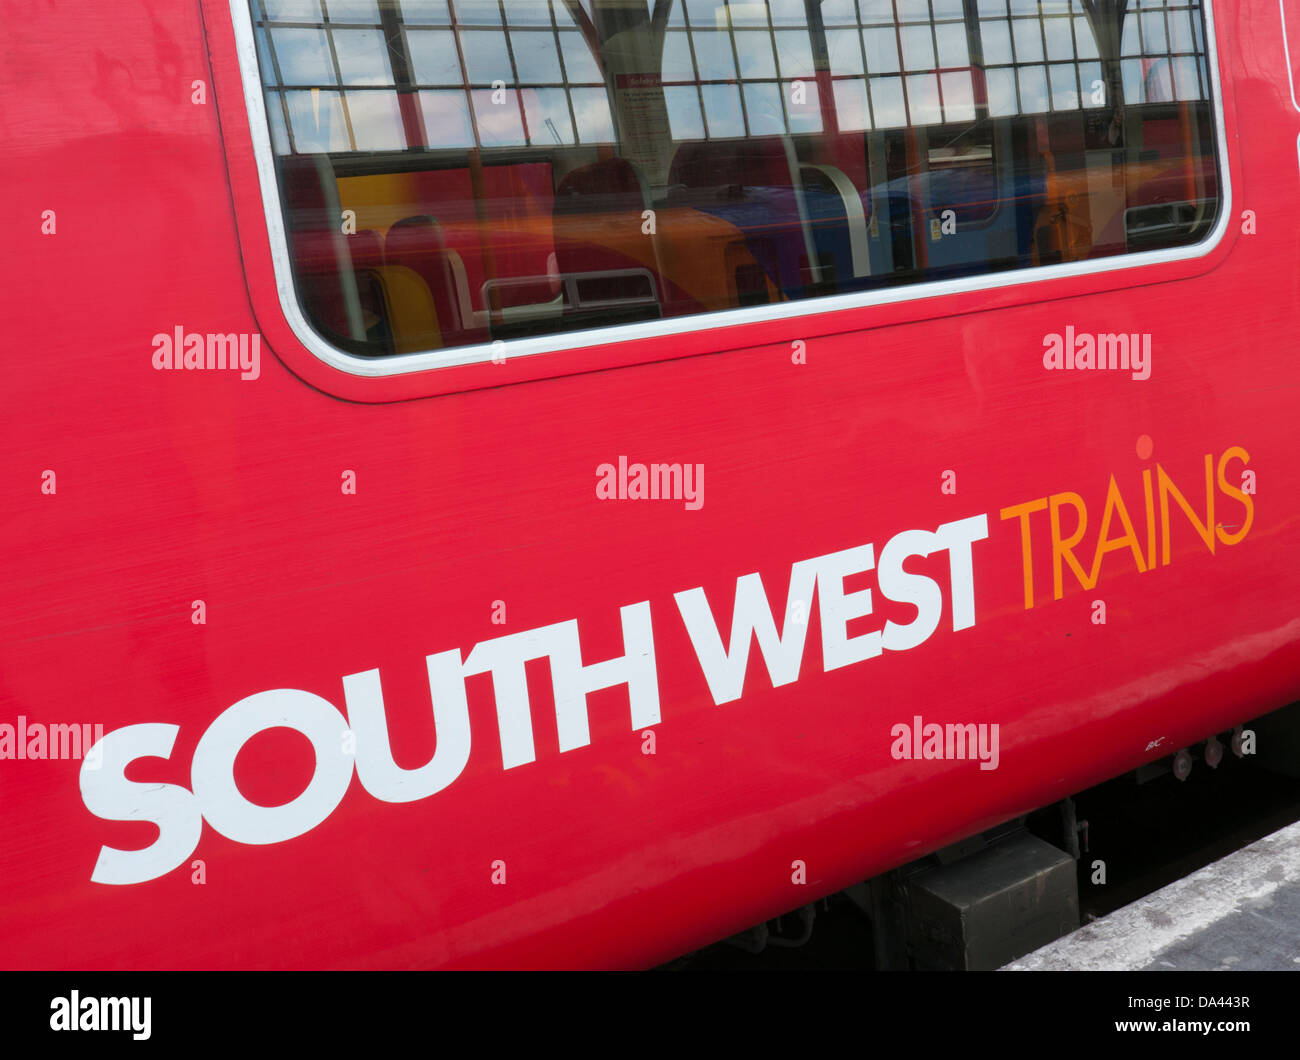 A sud-ovest di treni in Gran Bretagna Foto Stock